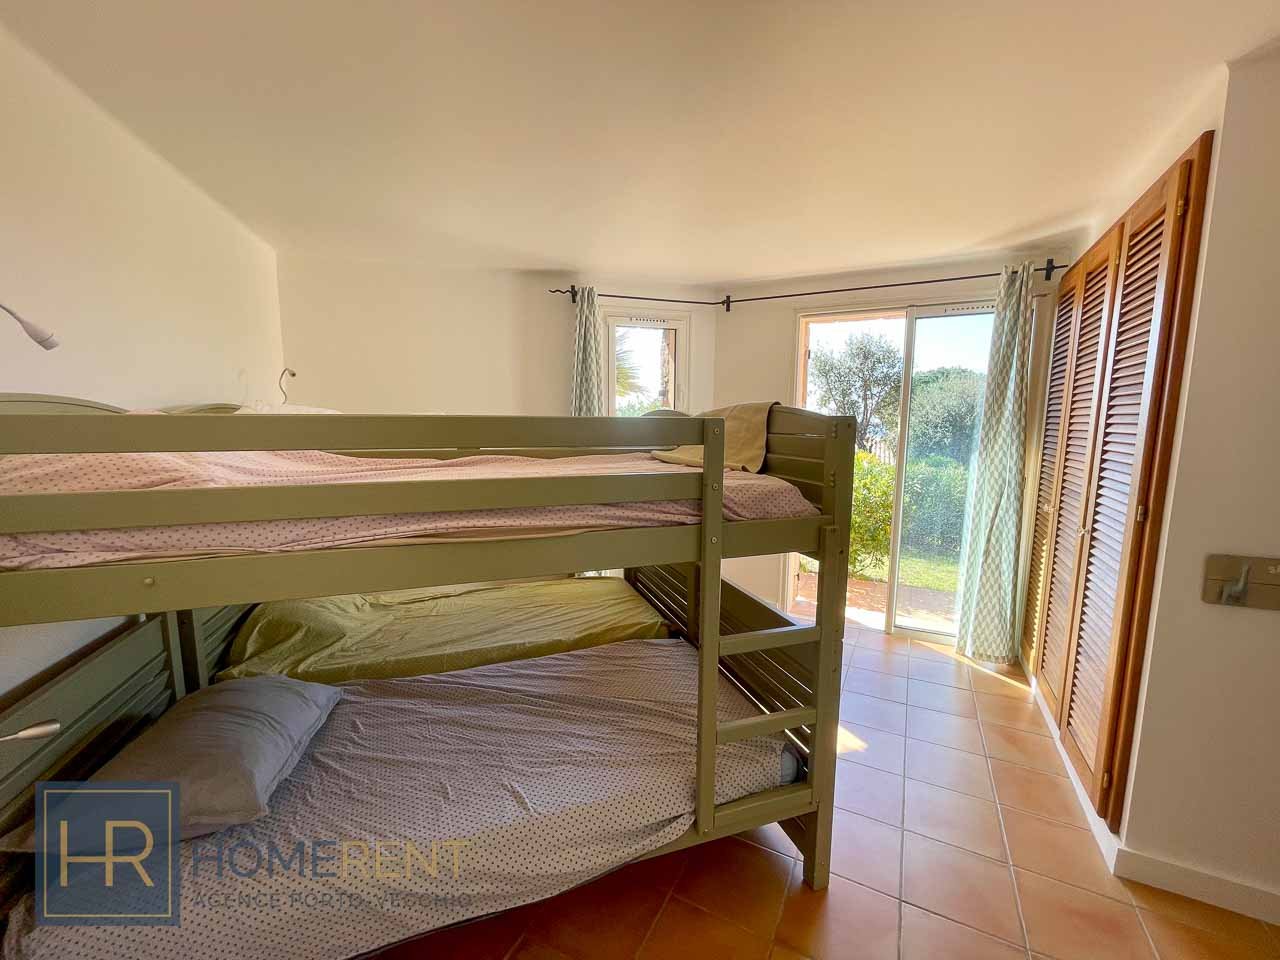 Chambre lits superposés enfants accès jardin vue mer plage à pied location villa domaine Capicciola vue mer luxe Porto Vecchio plage Pinarello